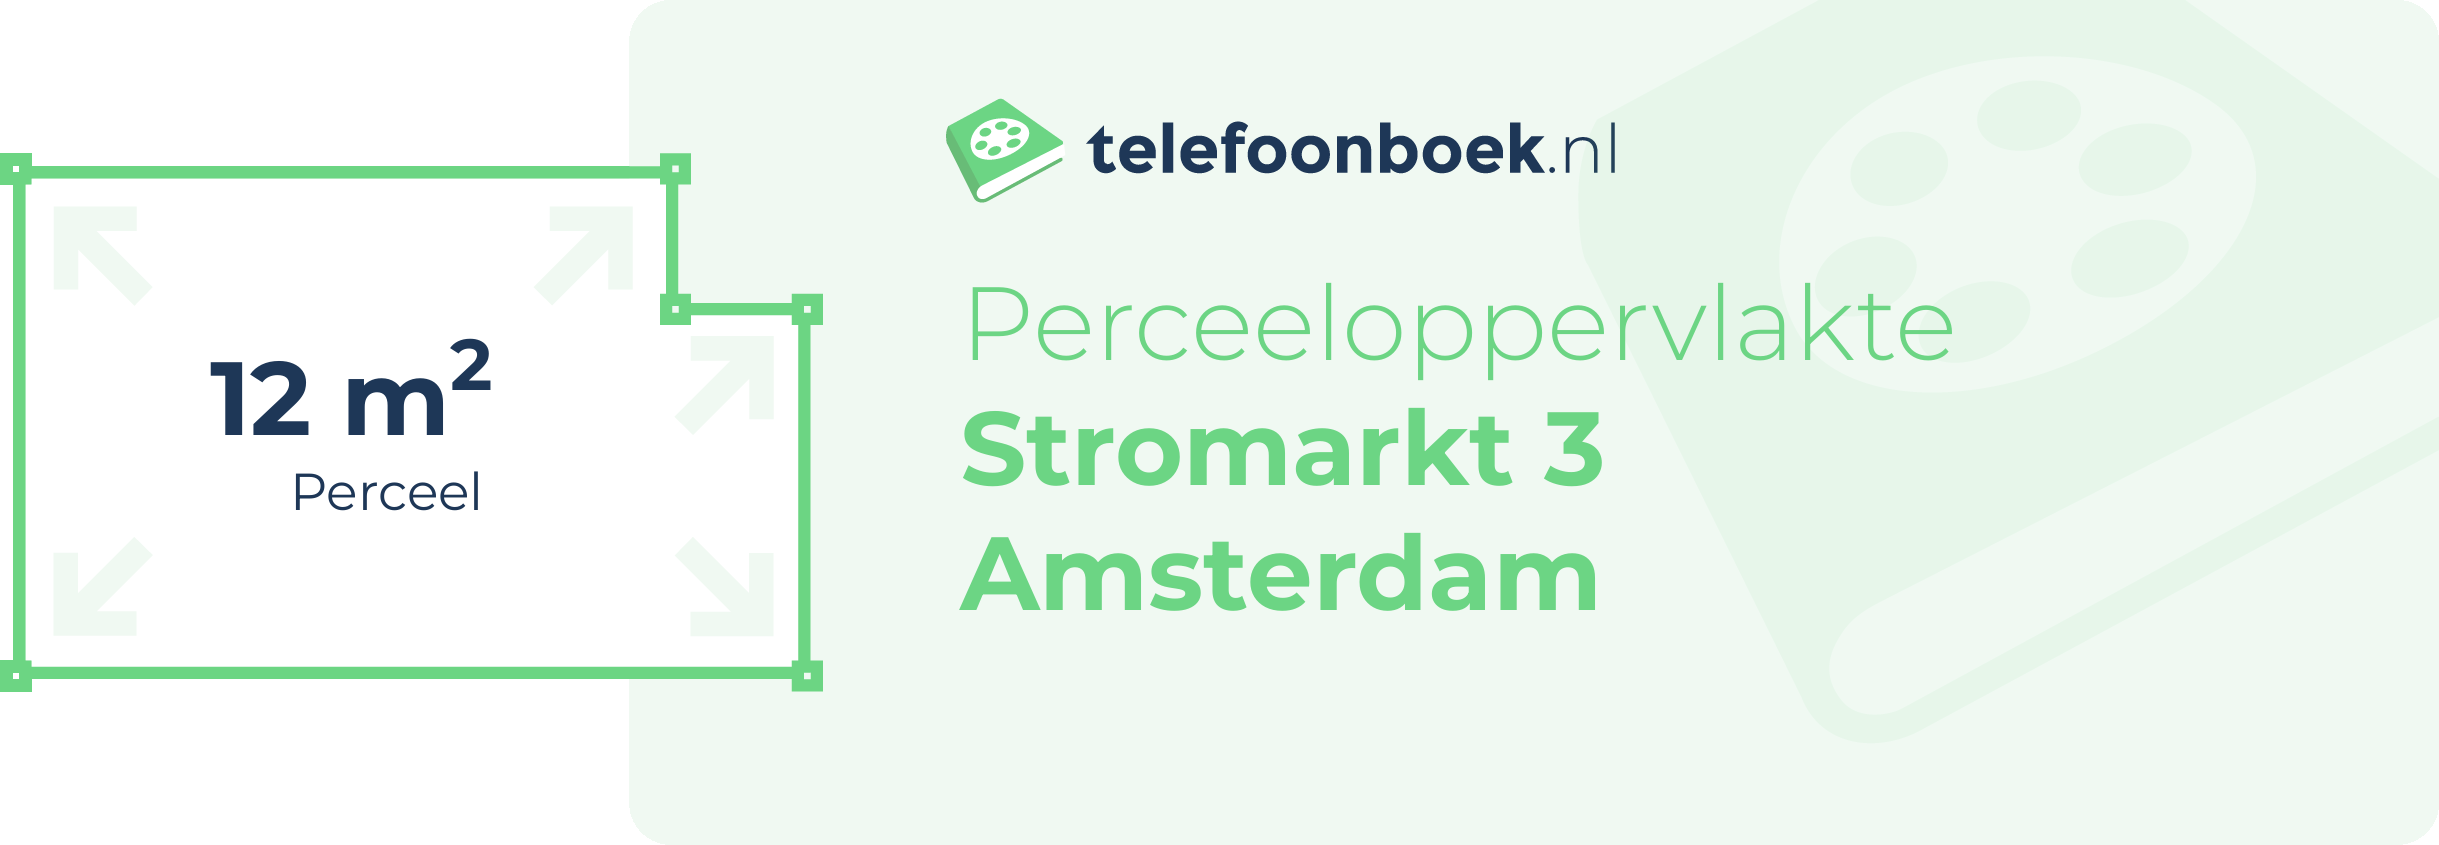 Perceeloppervlakte Stromarkt 3 Amsterdam